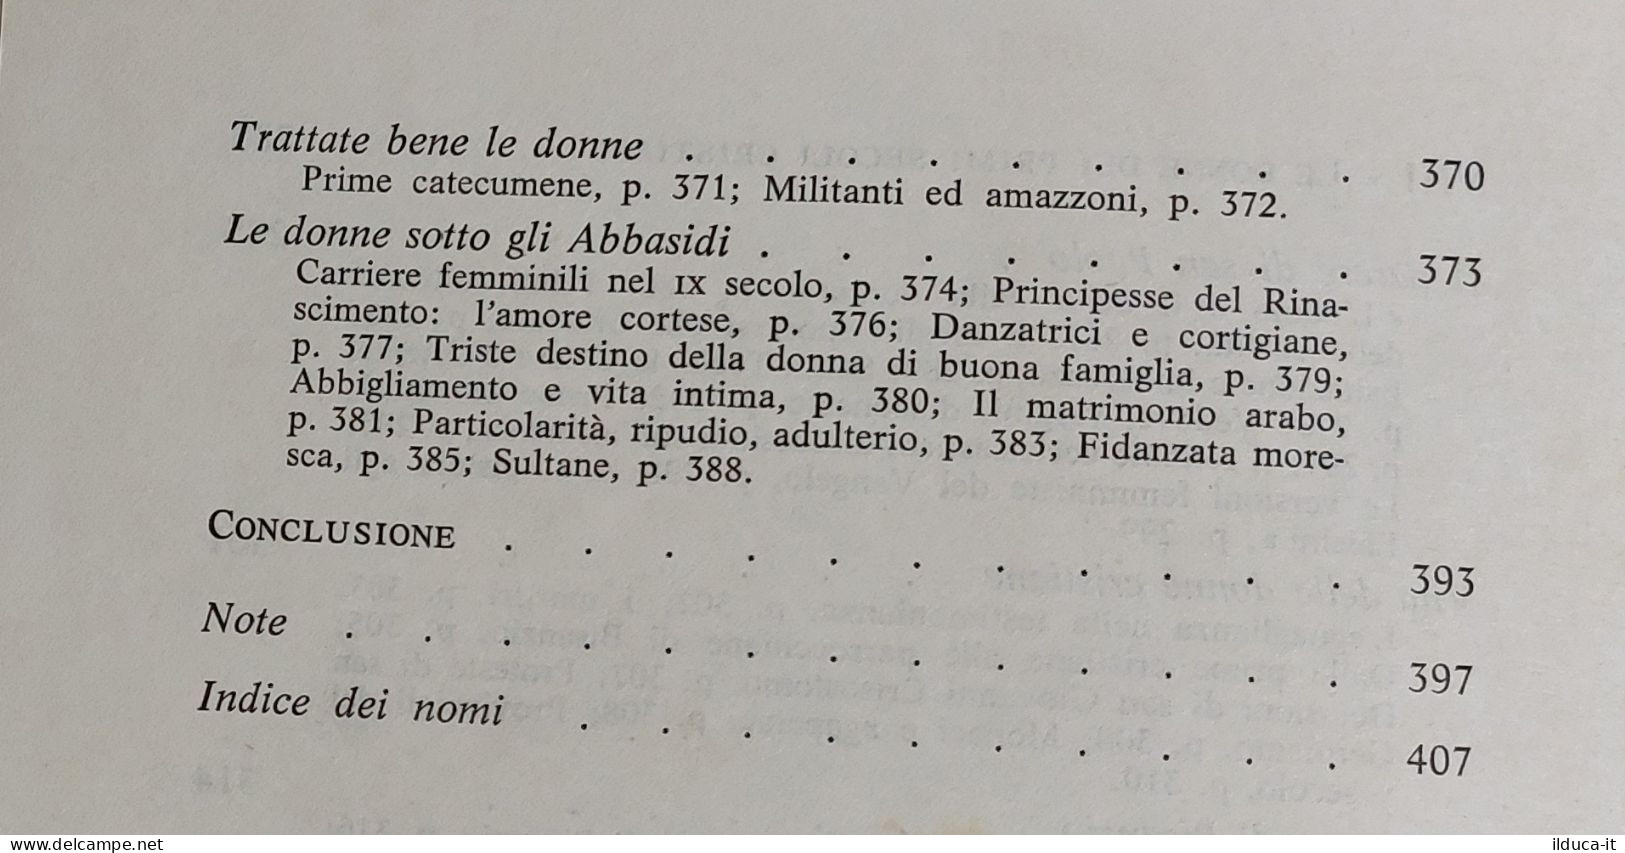 I113524 V M. Bardèche - Storia della donna - cofanetto 2 vol. - Mursia 1973 I ed